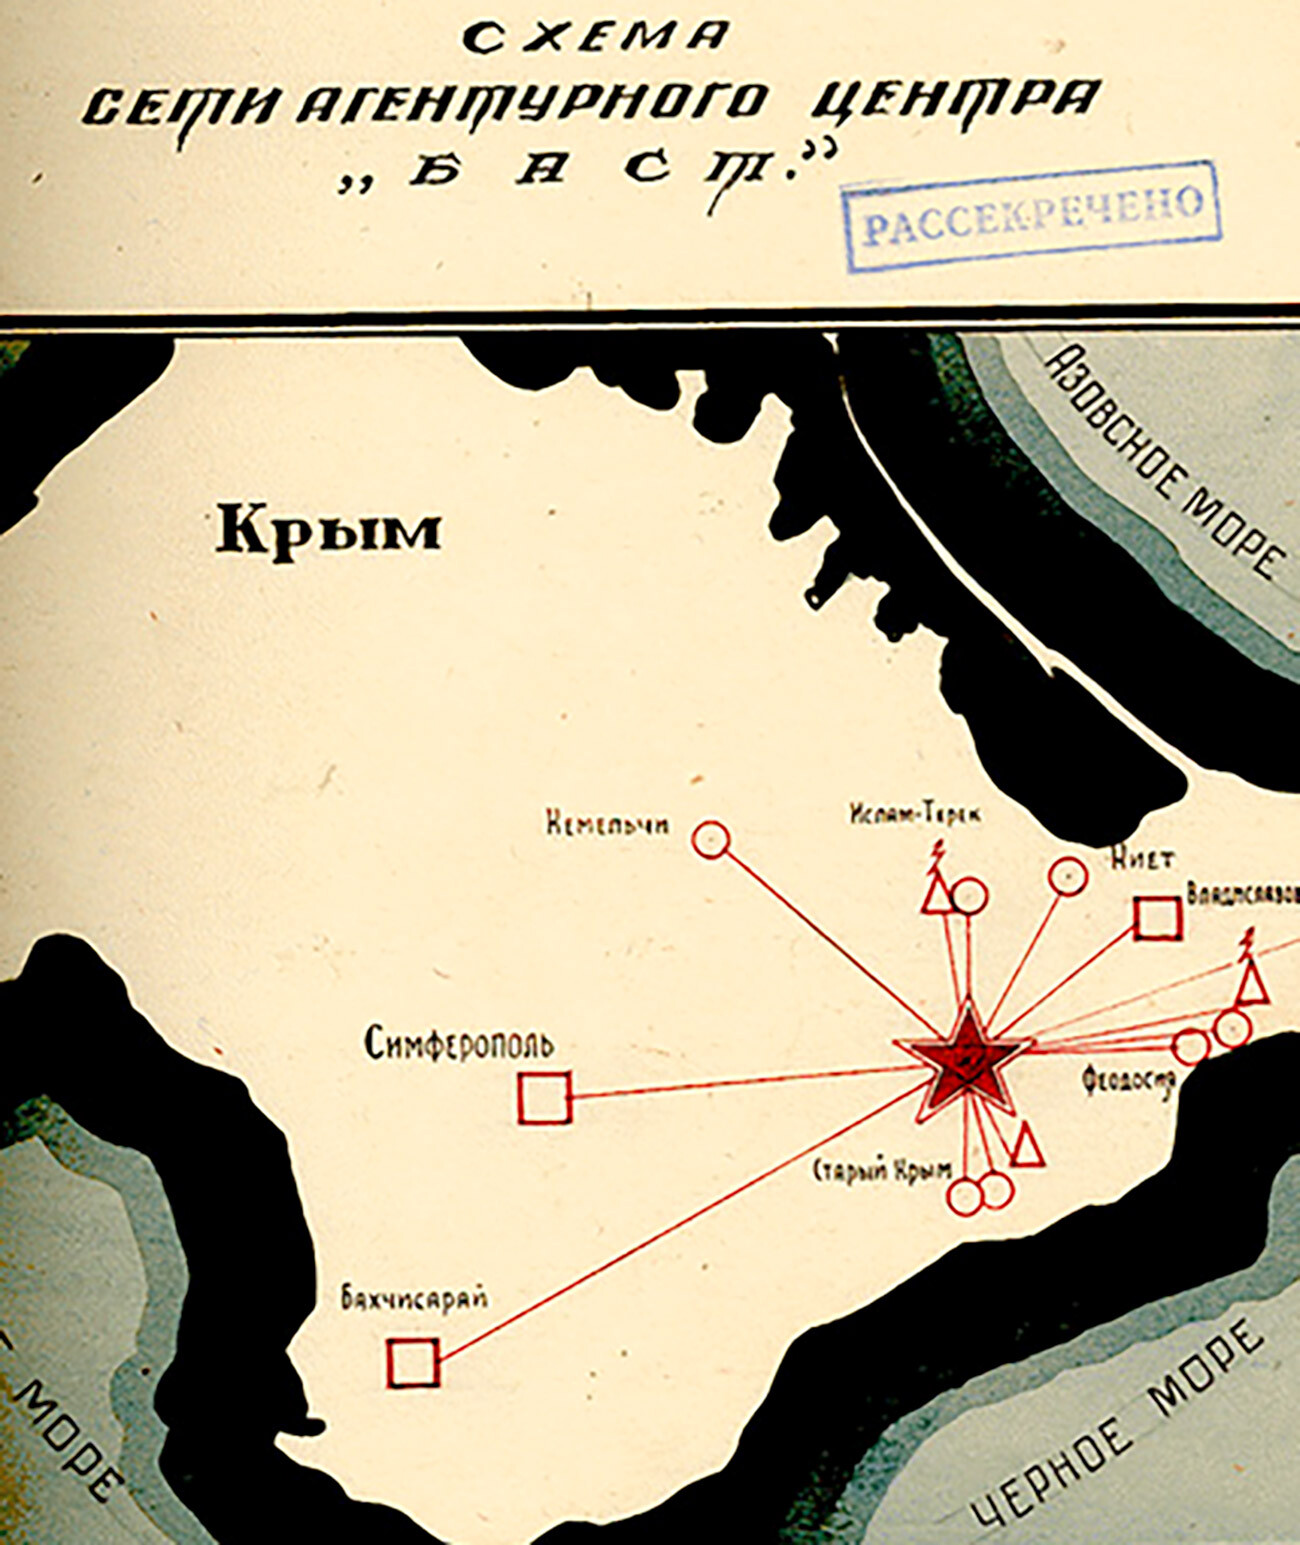 Schema der Bast-Agentenzentrale auf der Krim, 1943-1944. 